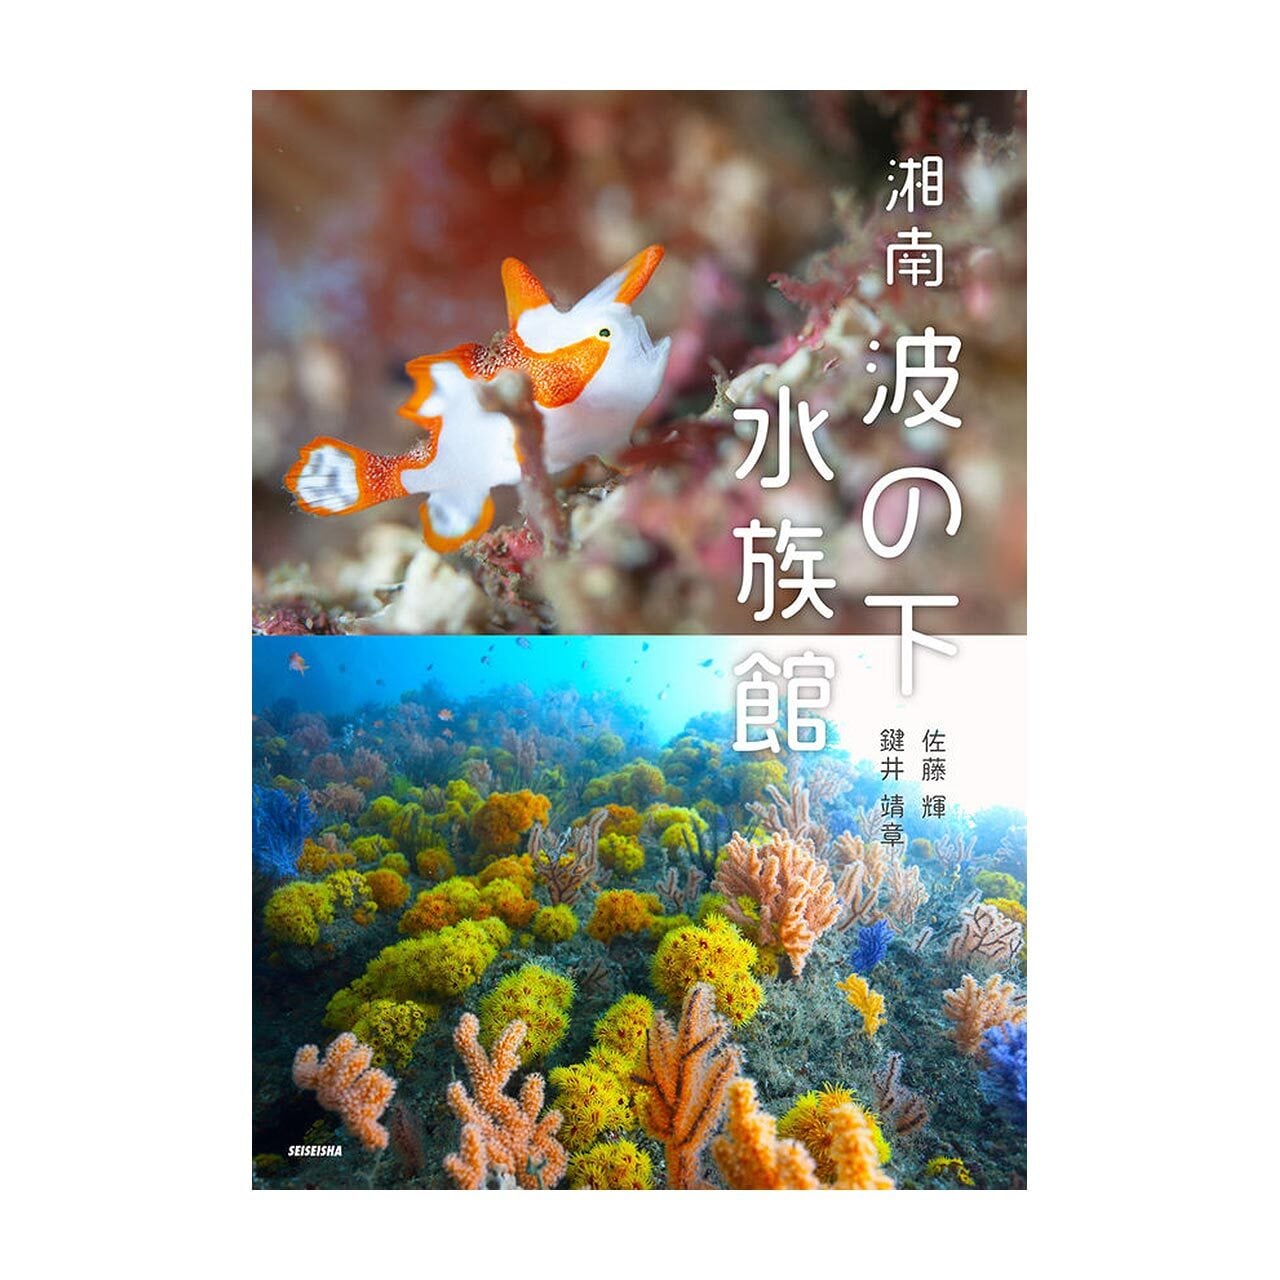 写真集「湘南 波の下水族館」